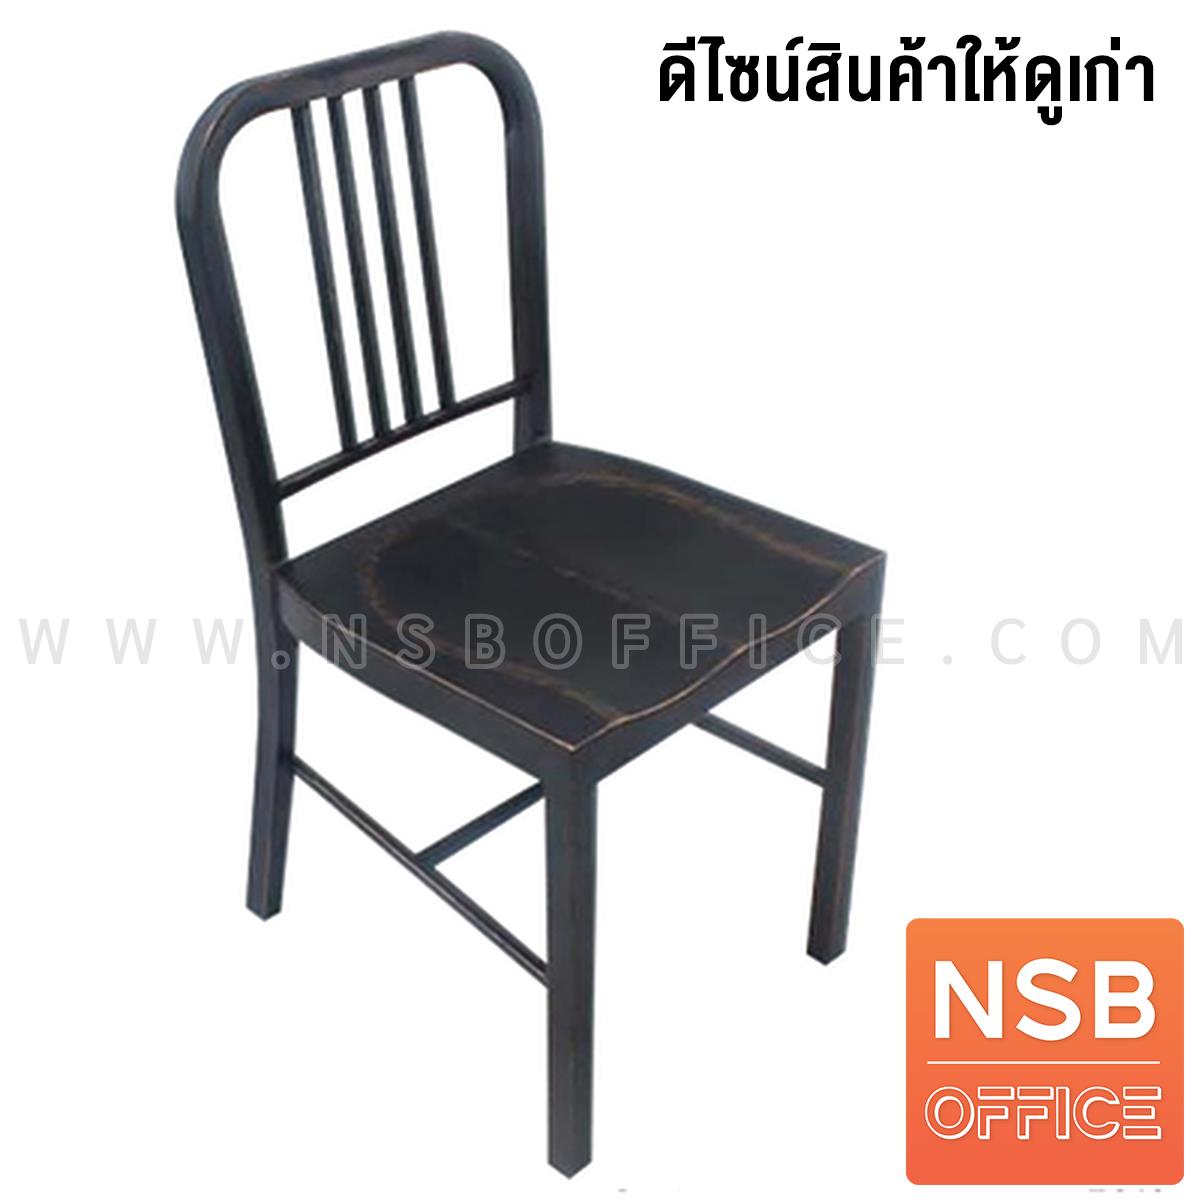 เก้าอี้โมเดิร์นเหล็ก รุ่น Quala (ควาล่า) ขนาด 41W cm. ขาเหล็ก สินค้าใหม่ที่ถูกทำให้ดูเก่า 